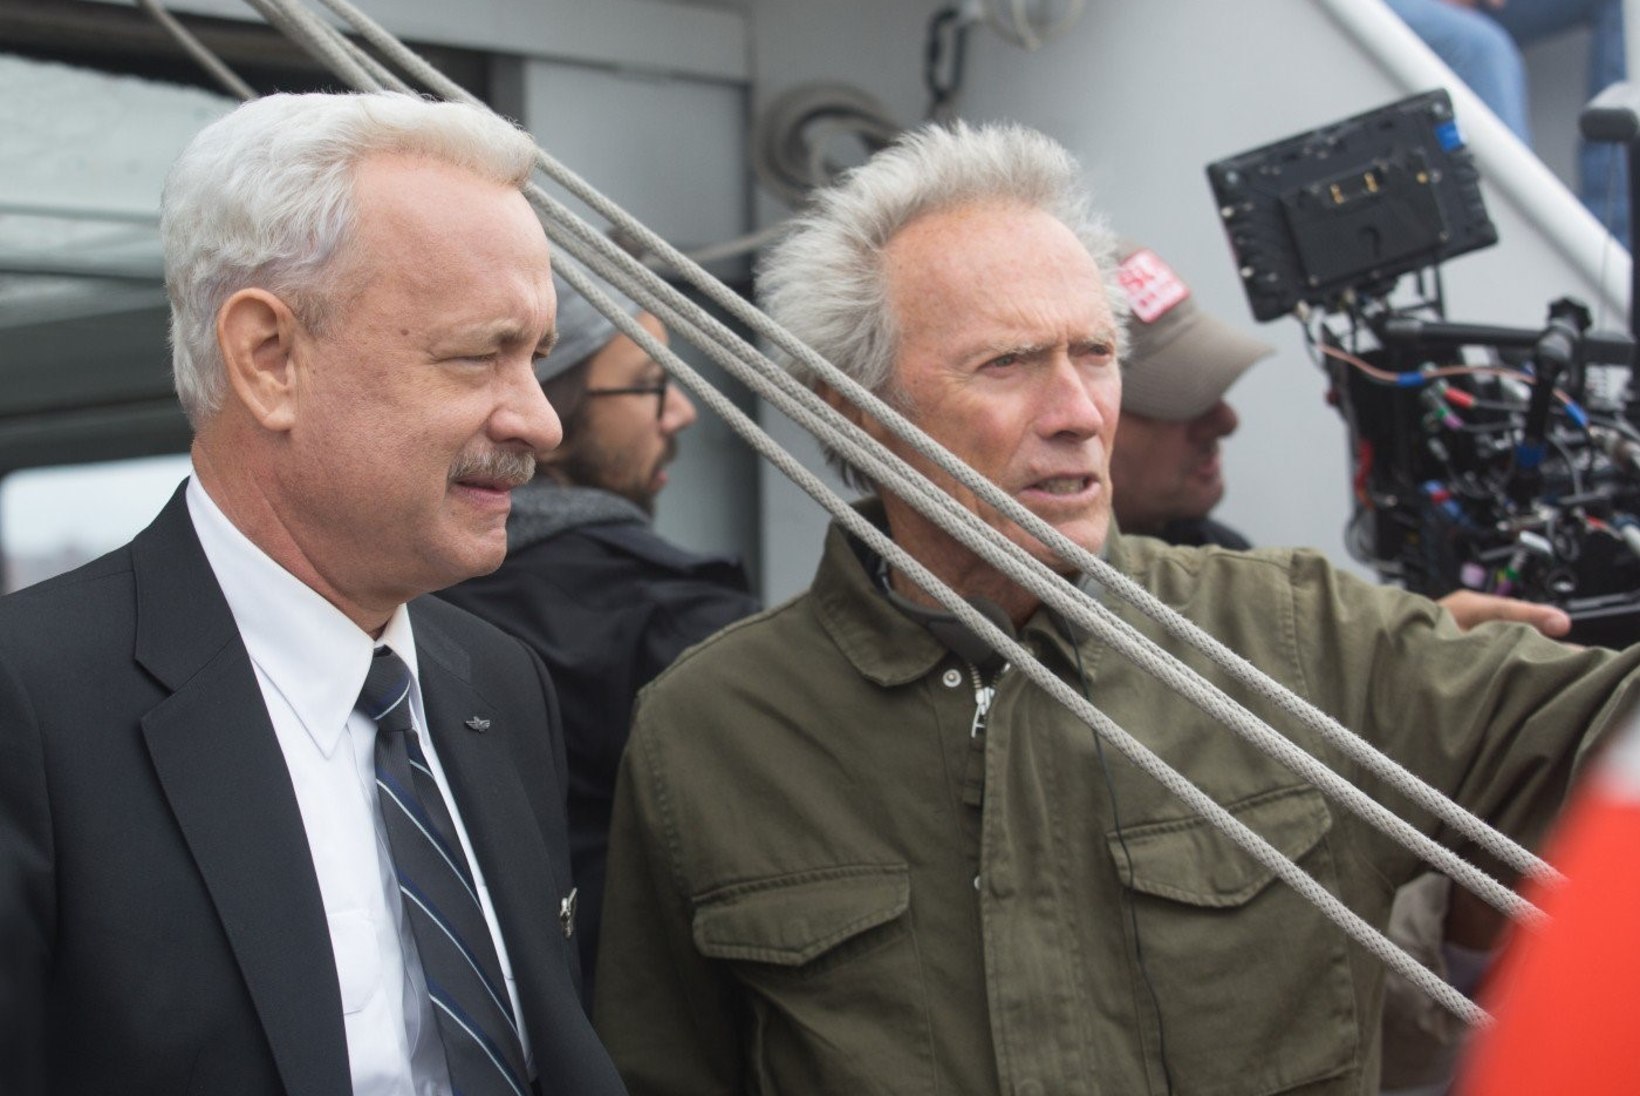 ARVUSTUS: "Sully" – Clint Eastwood jooksis selle kangelasfilmiga lati alt läbi